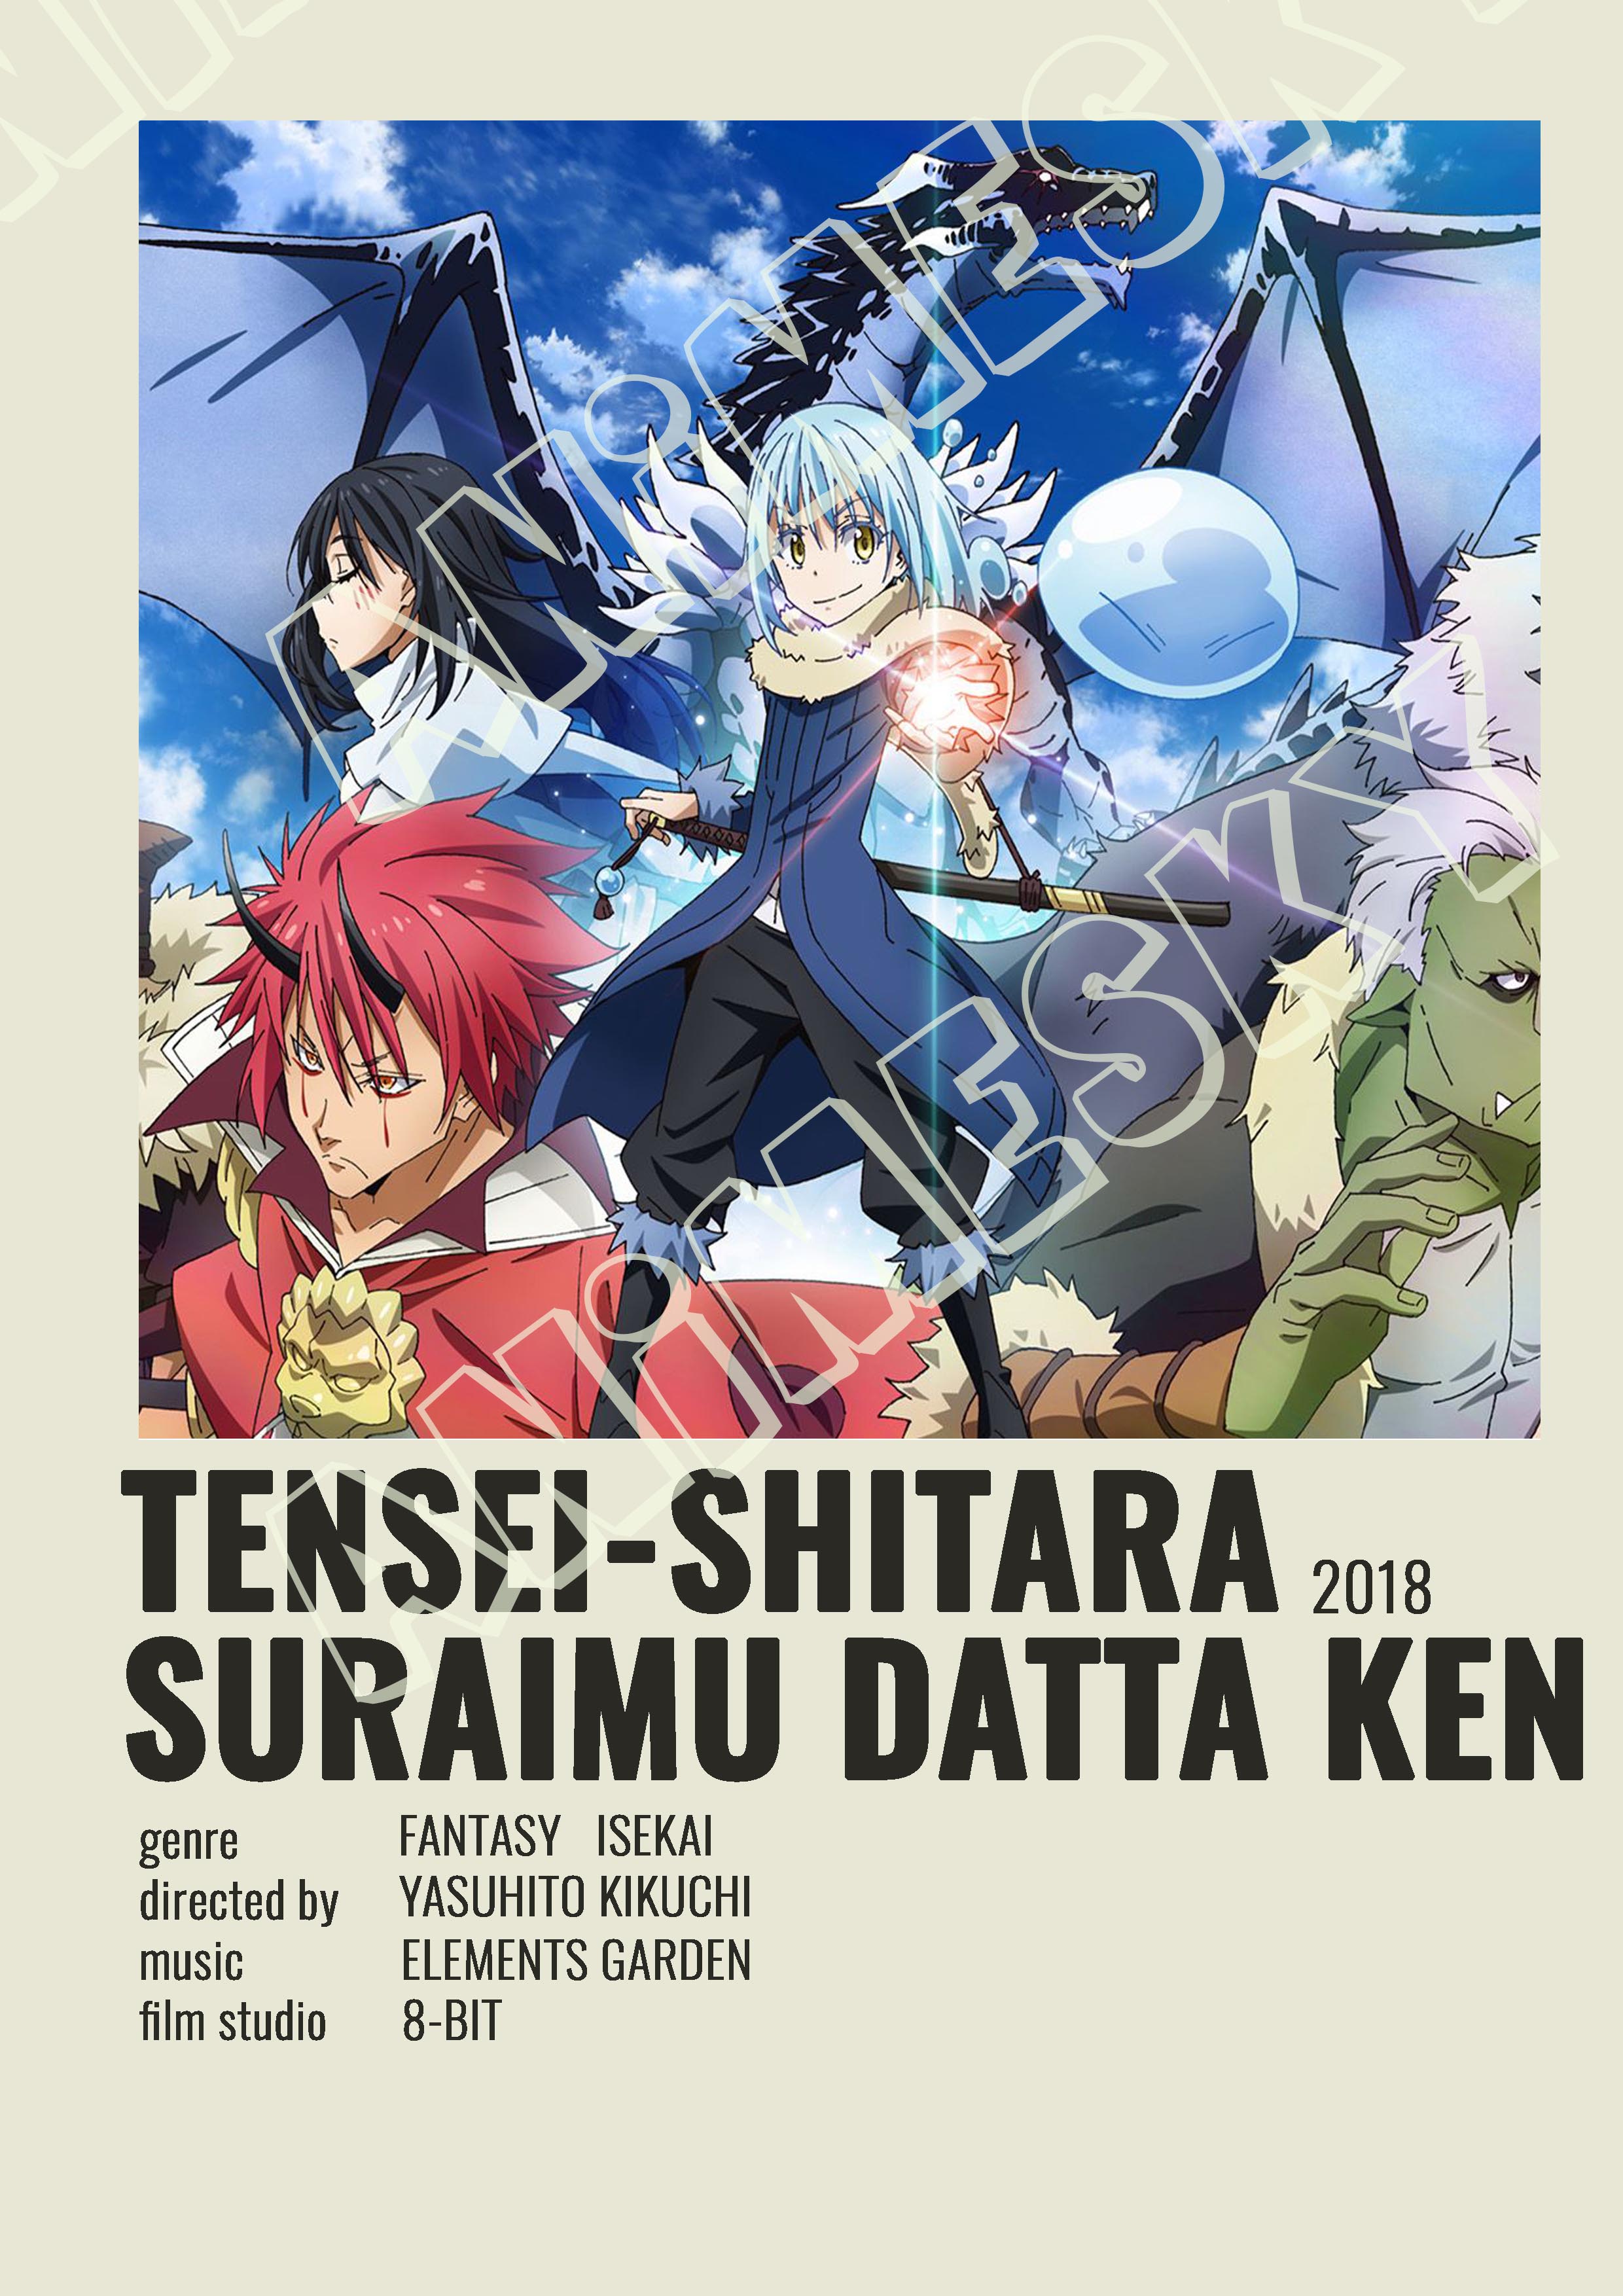 Poster thẻ tên Anime: Tokyo Revengers, Kimetsu no Yaiba, Jujutsu Kaisen,  One Piece, Boku no Hero Academi,.... 